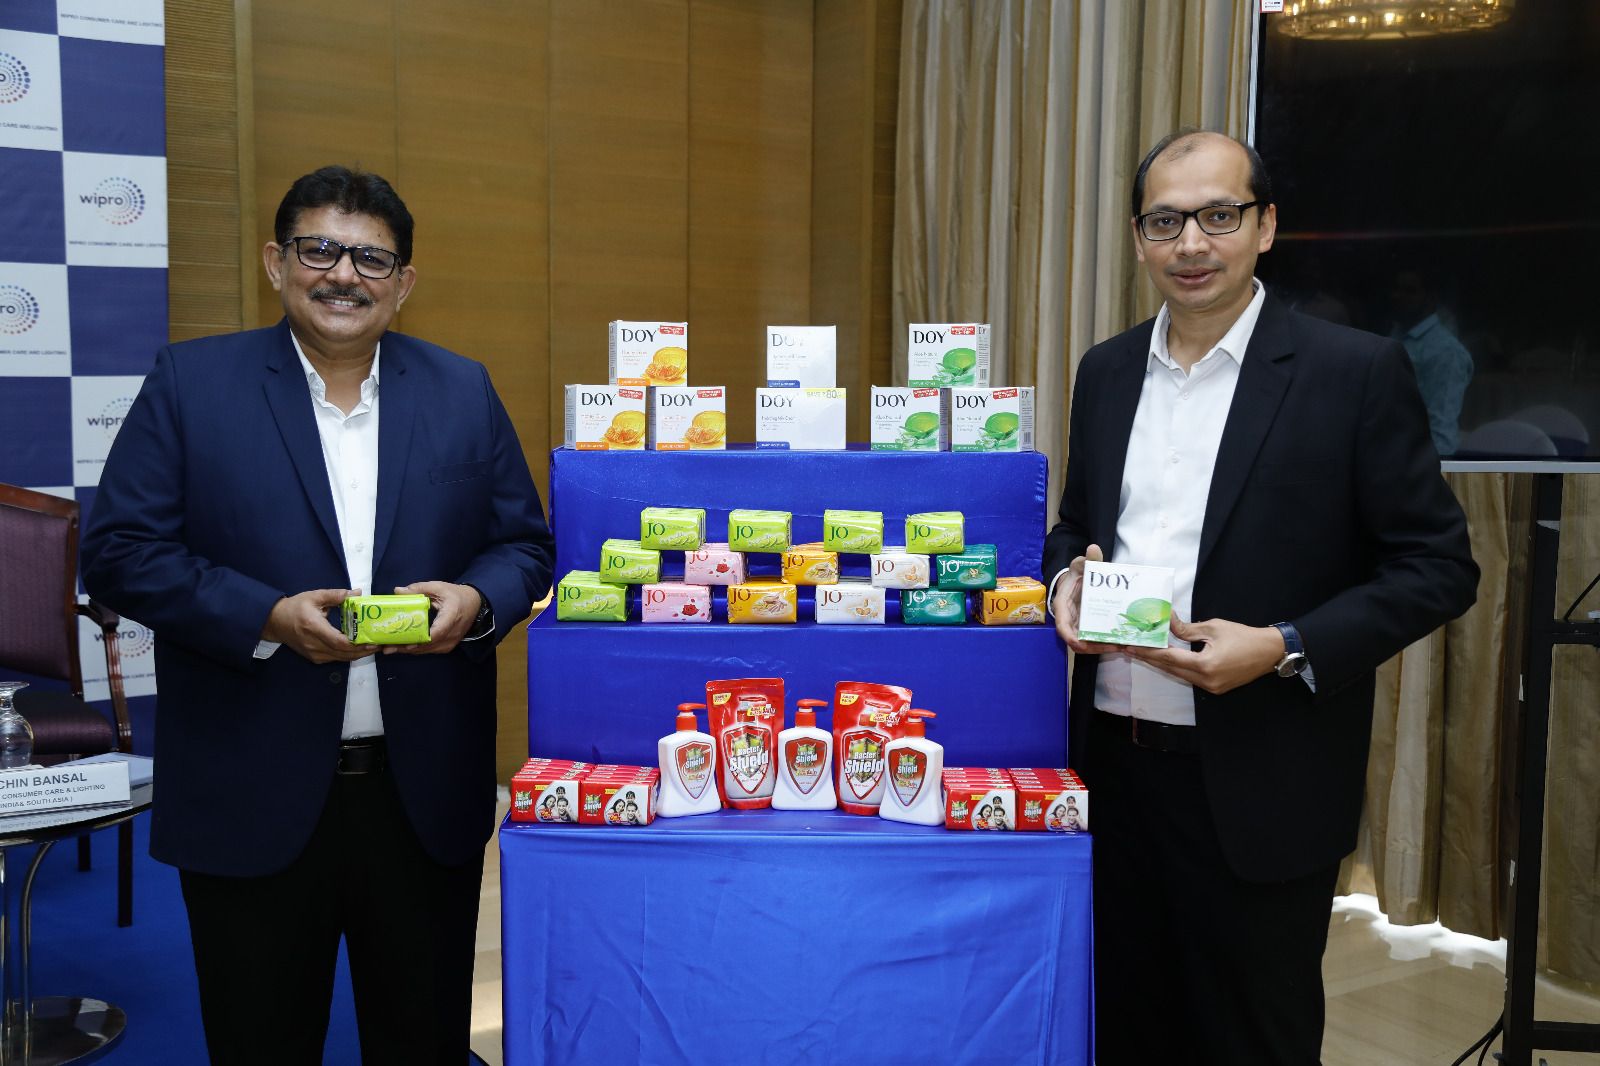 印度综合性企业集团 Wipro 从肥皂制造商 VVF 手中收购三个肥皂品牌